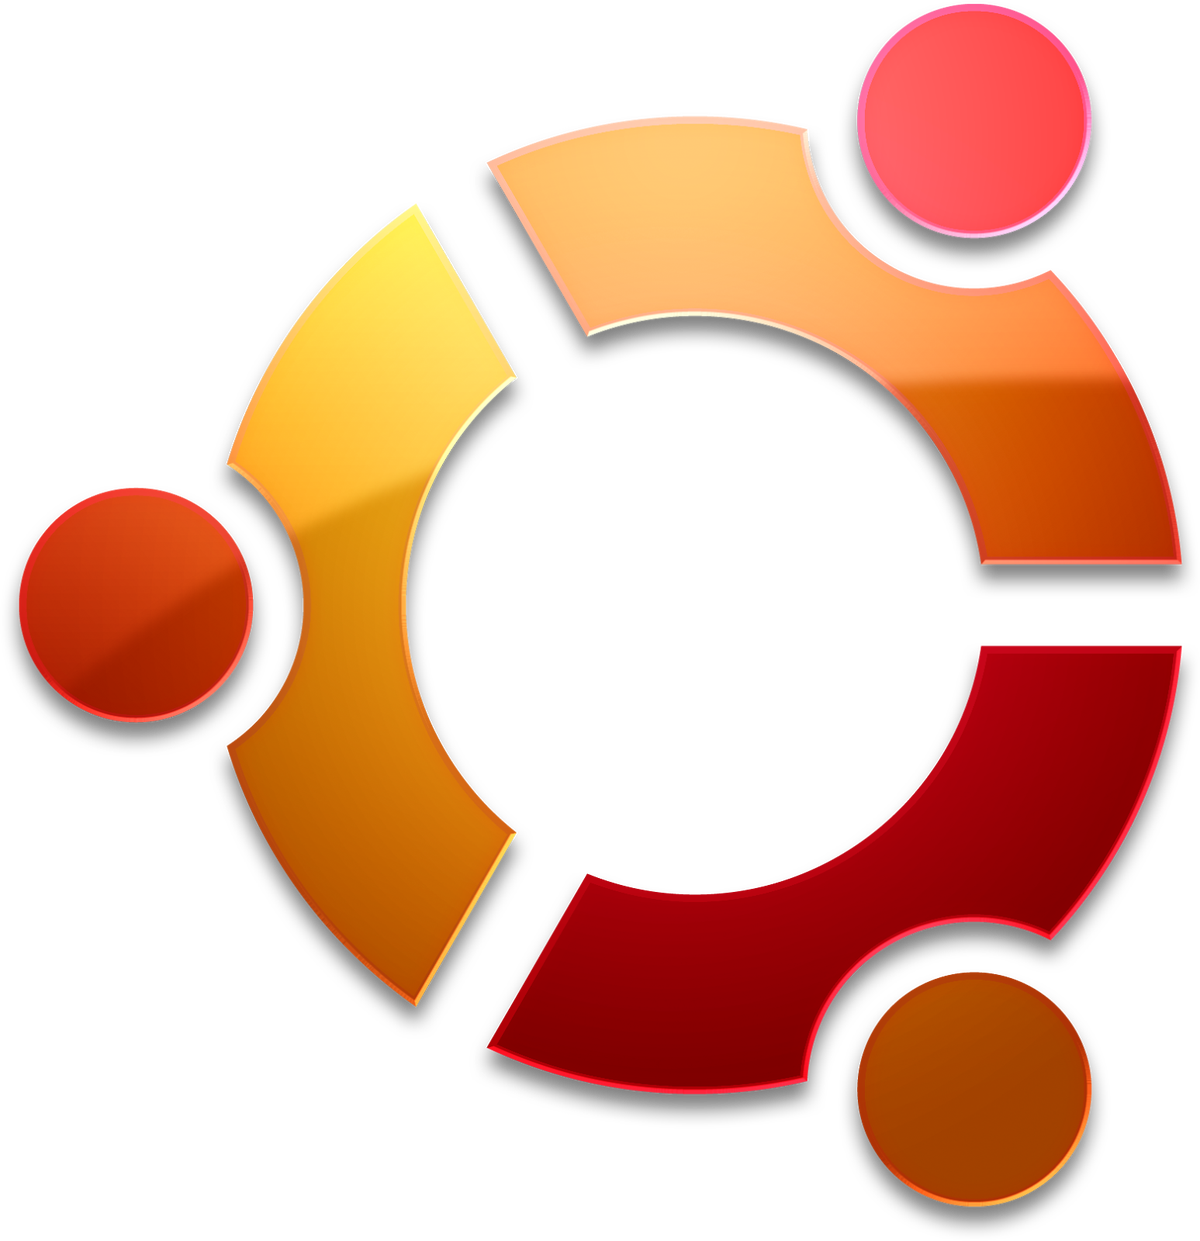 UbuntuLogo1.png